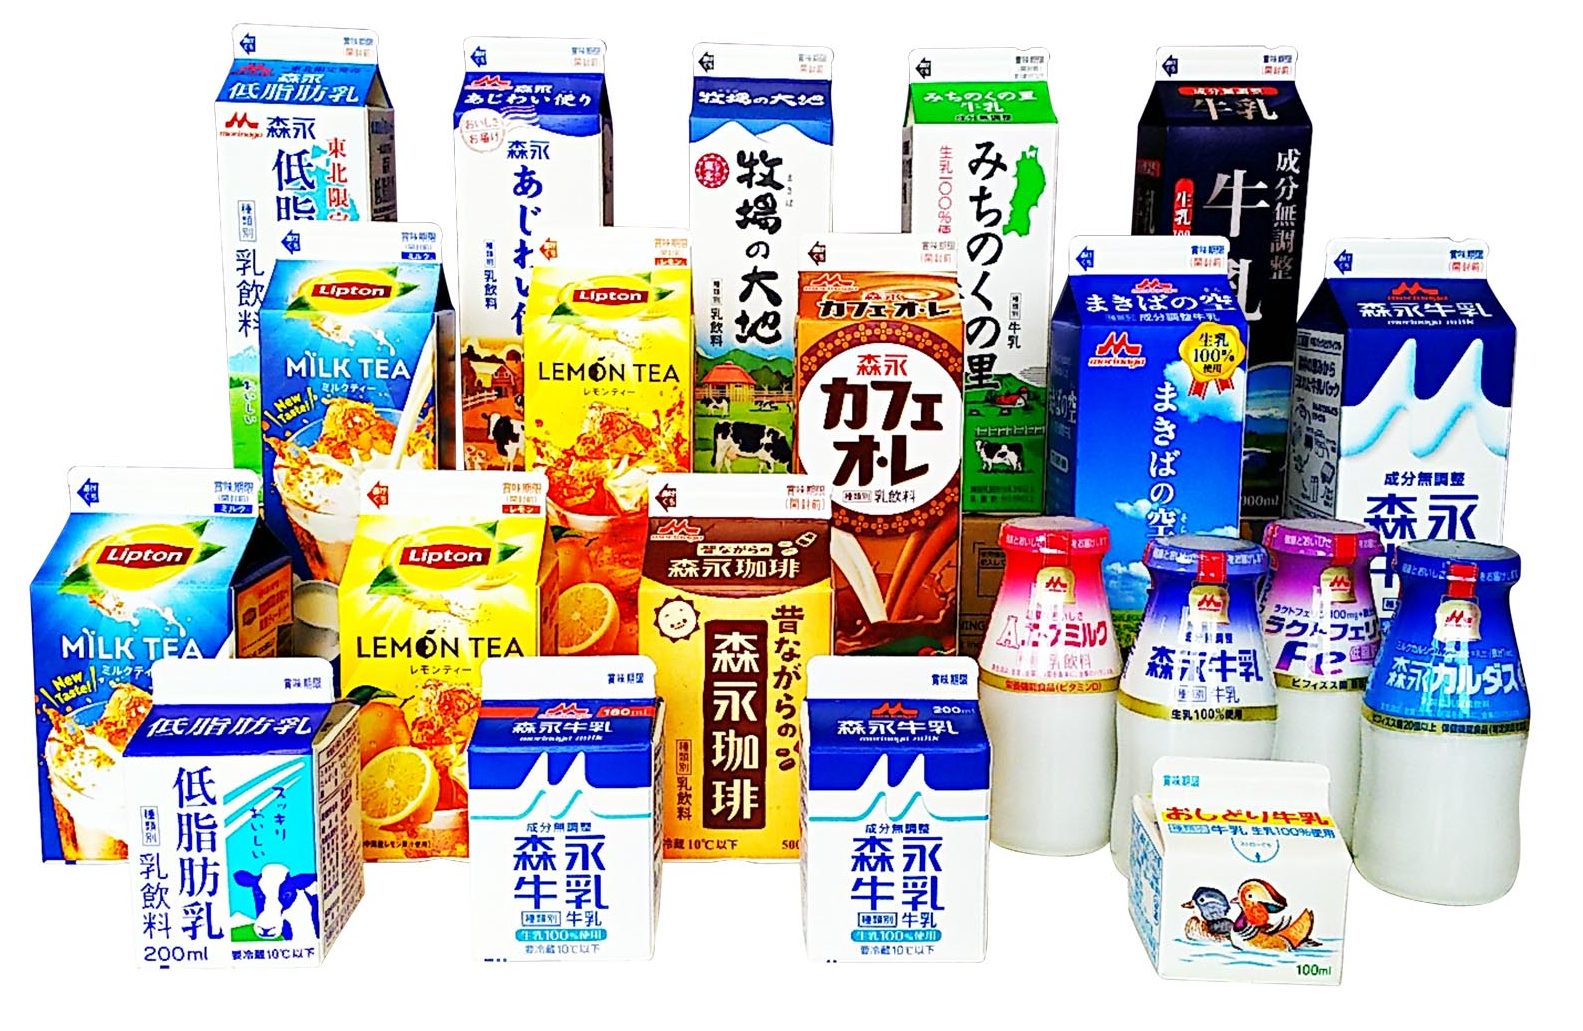 乳業 森永 森永乳業、練乳アイスをのせたメロンソーダ味かき氷: 日本経済新聞